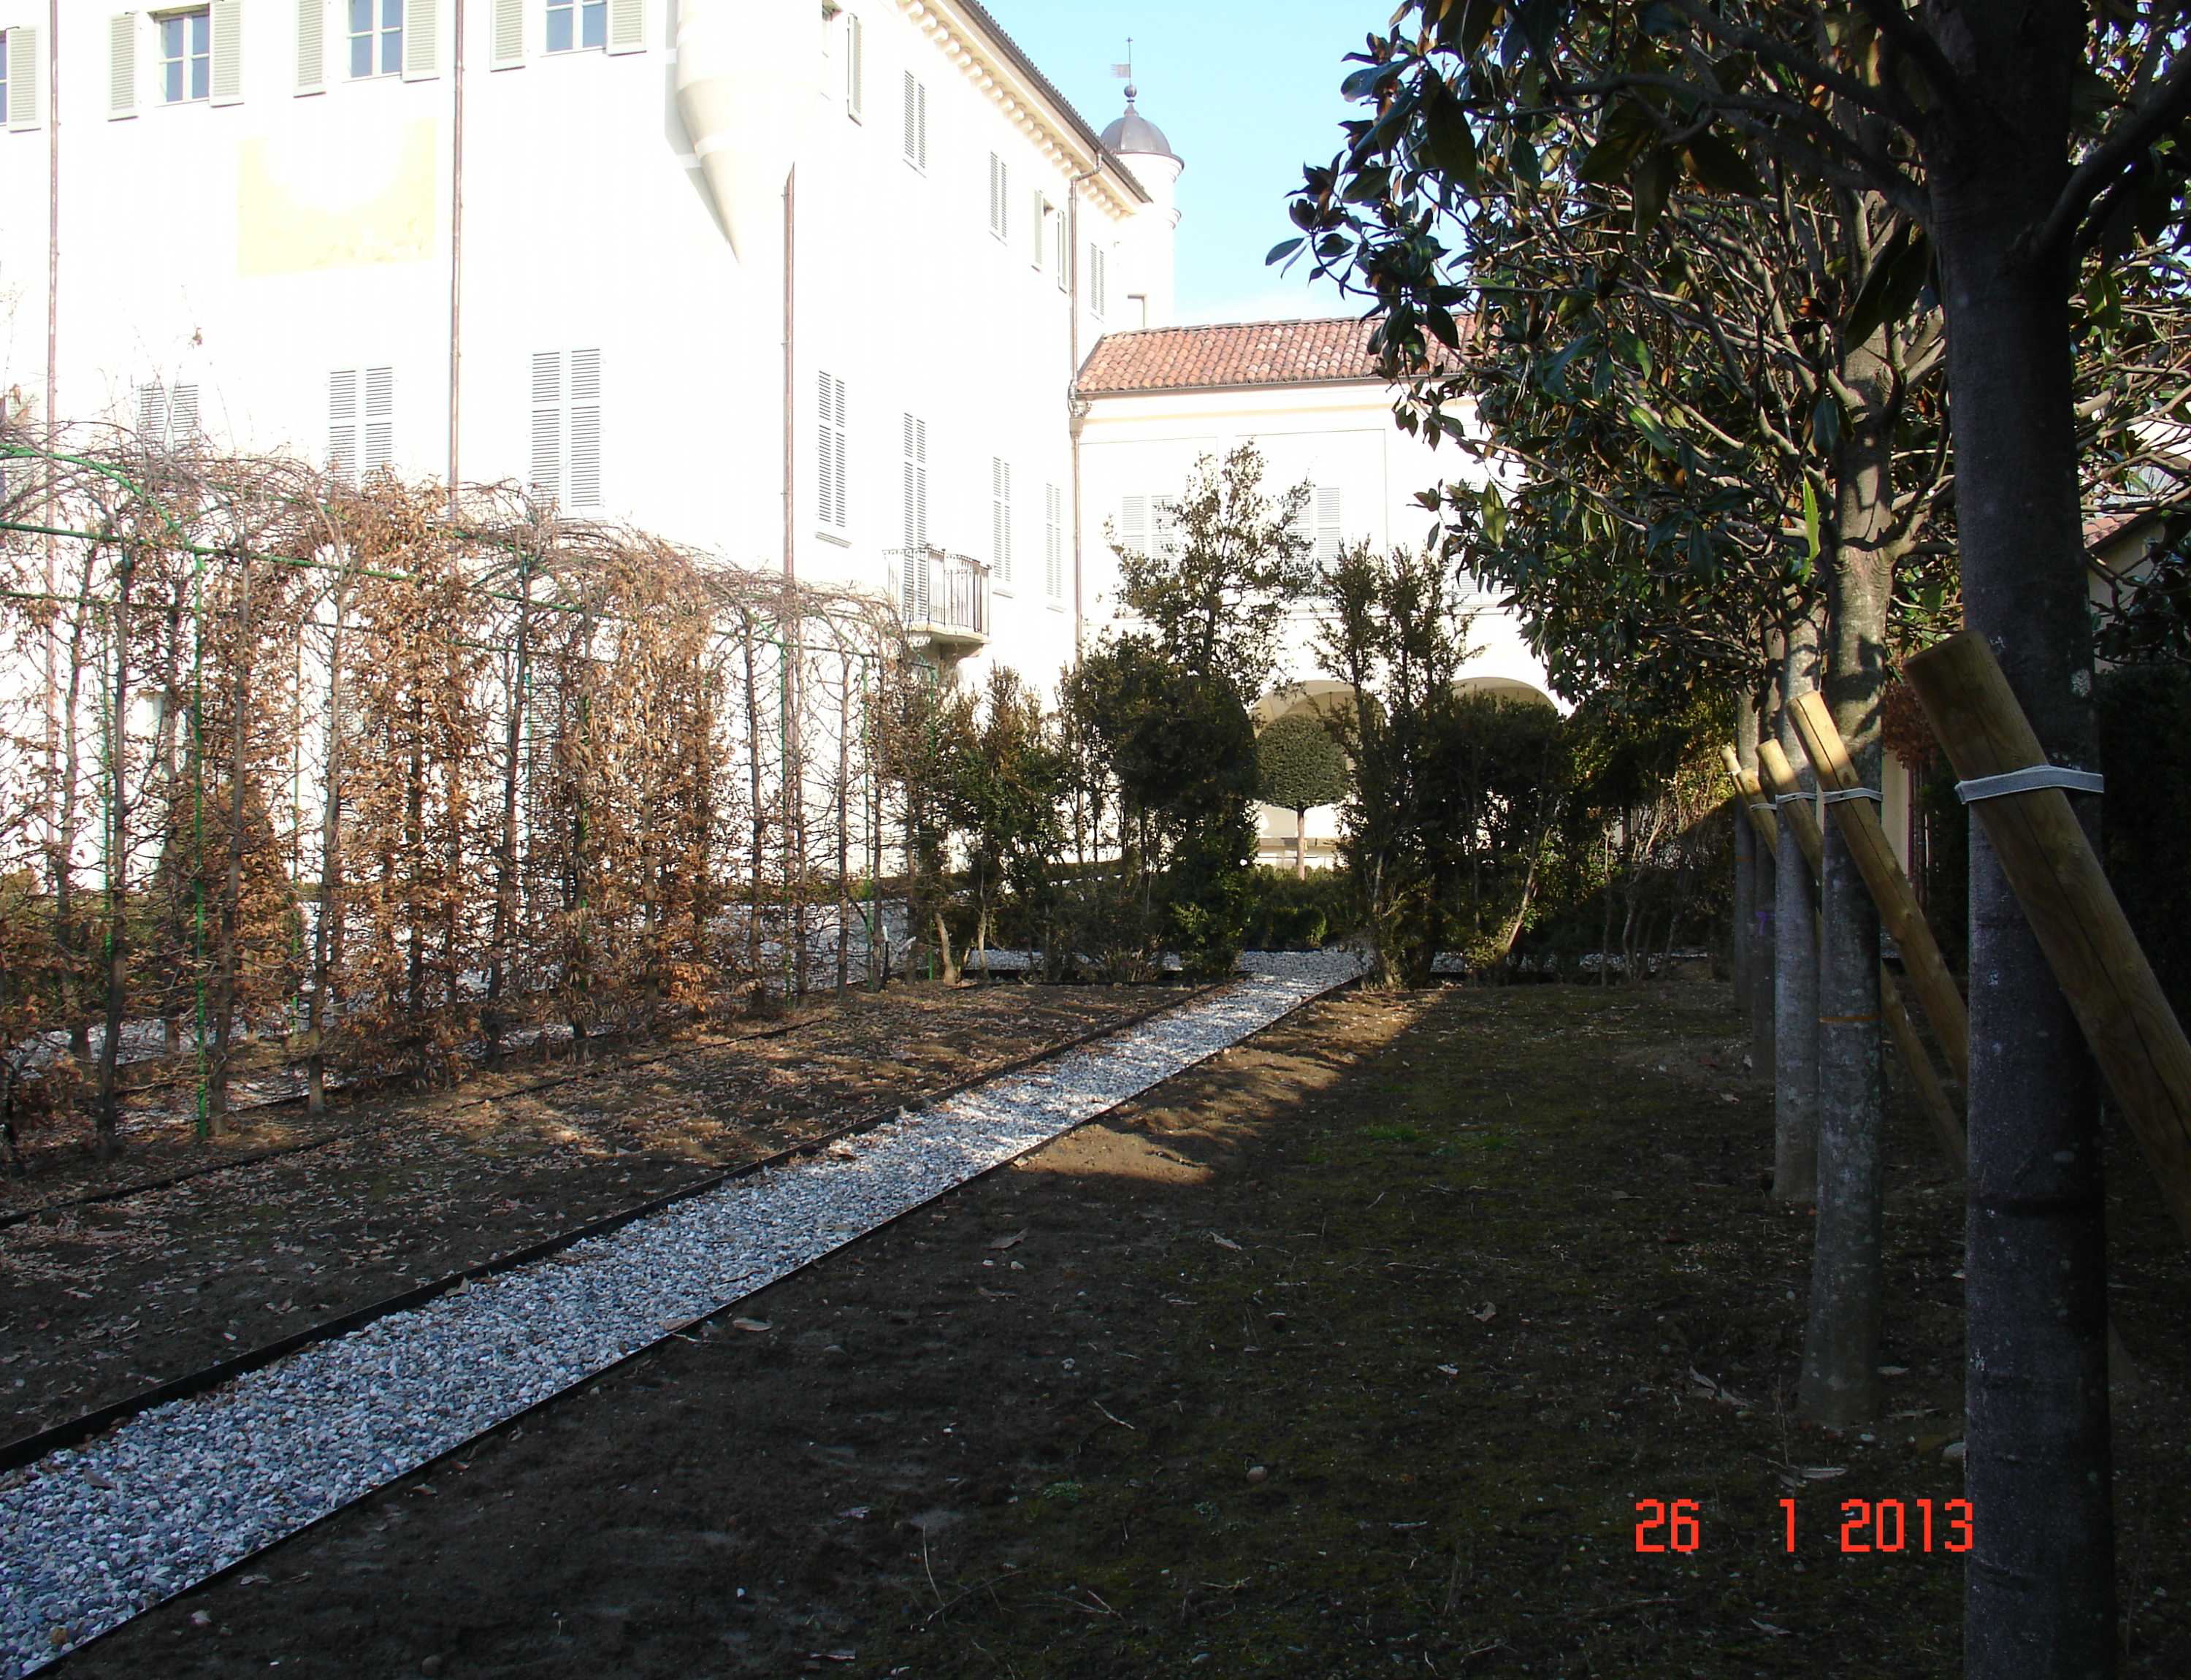 Castello di Grosso - Aiuole laterali al giardino all'italiana